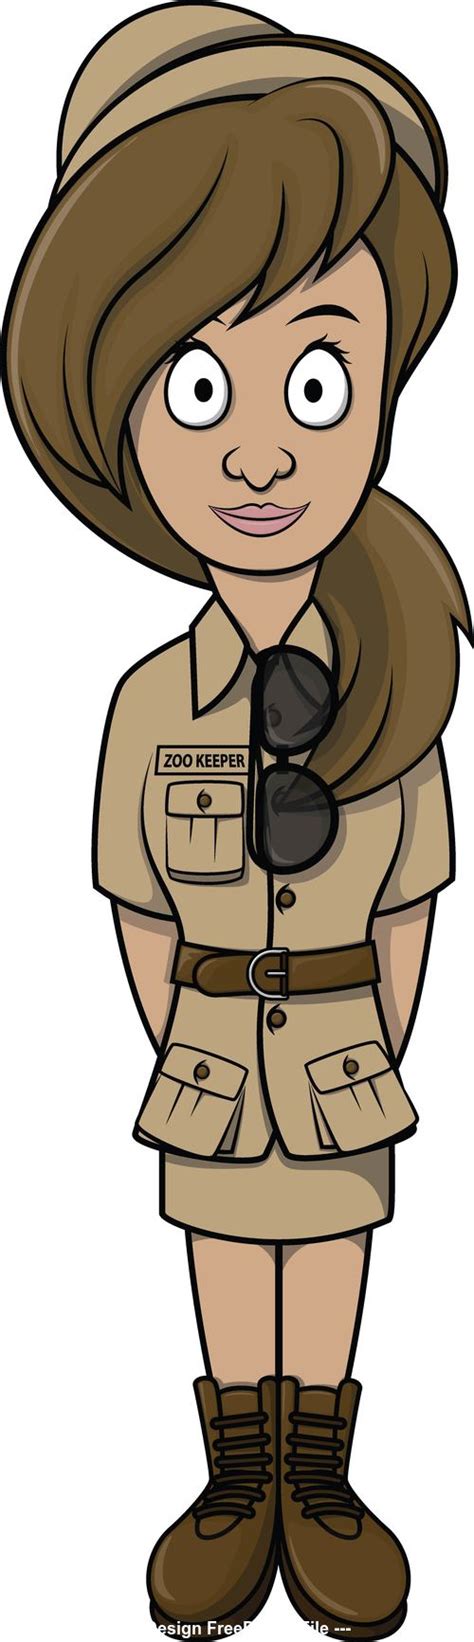 zookeeper woman cartoon illustration vector